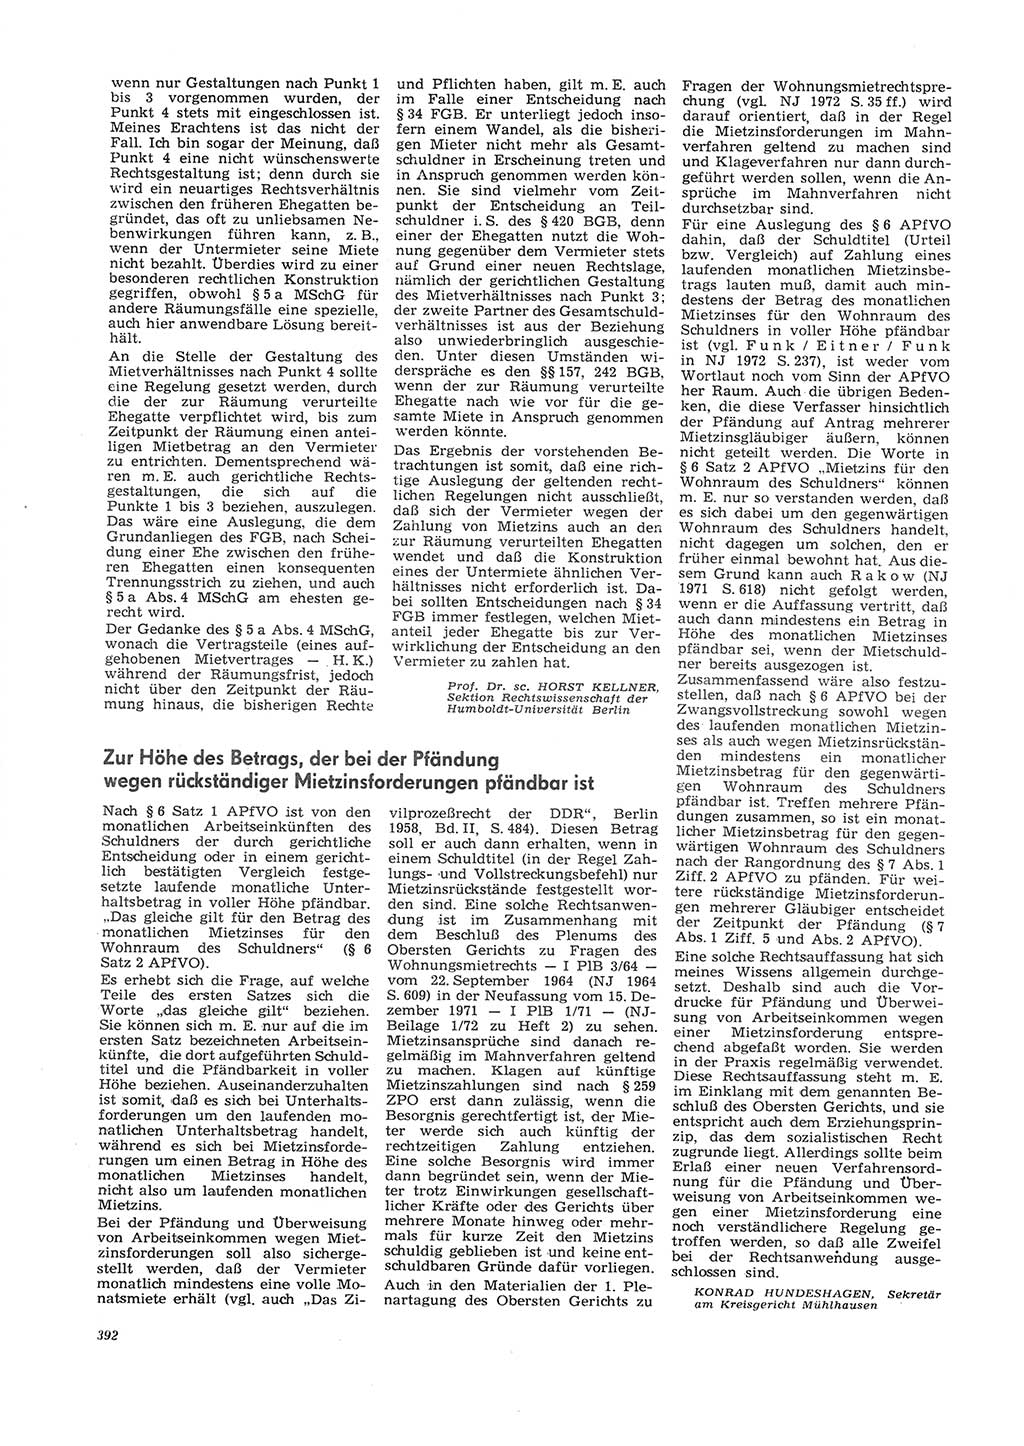 Neue Justiz (NJ), Zeitschrift für Recht und Rechtswissenschaft [Deutsche Demokratische Republik (DDR)], 26. Jahrgang 1972, Seite 392 (NJ DDR 1972, S. 392)